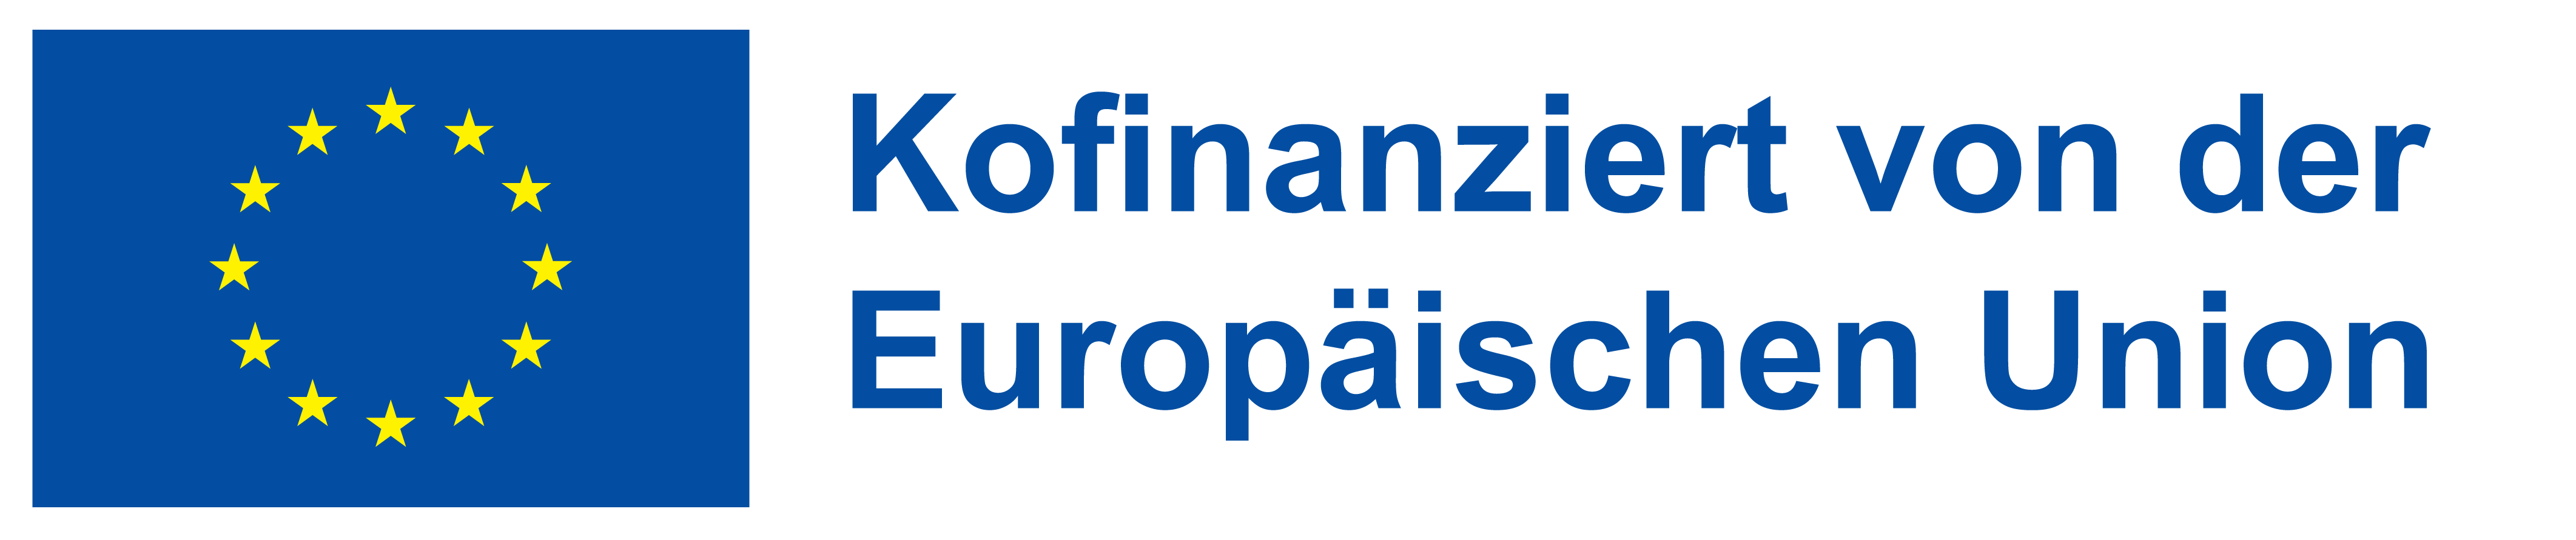 Kofinanziert von der Europäischen Union (Logo)